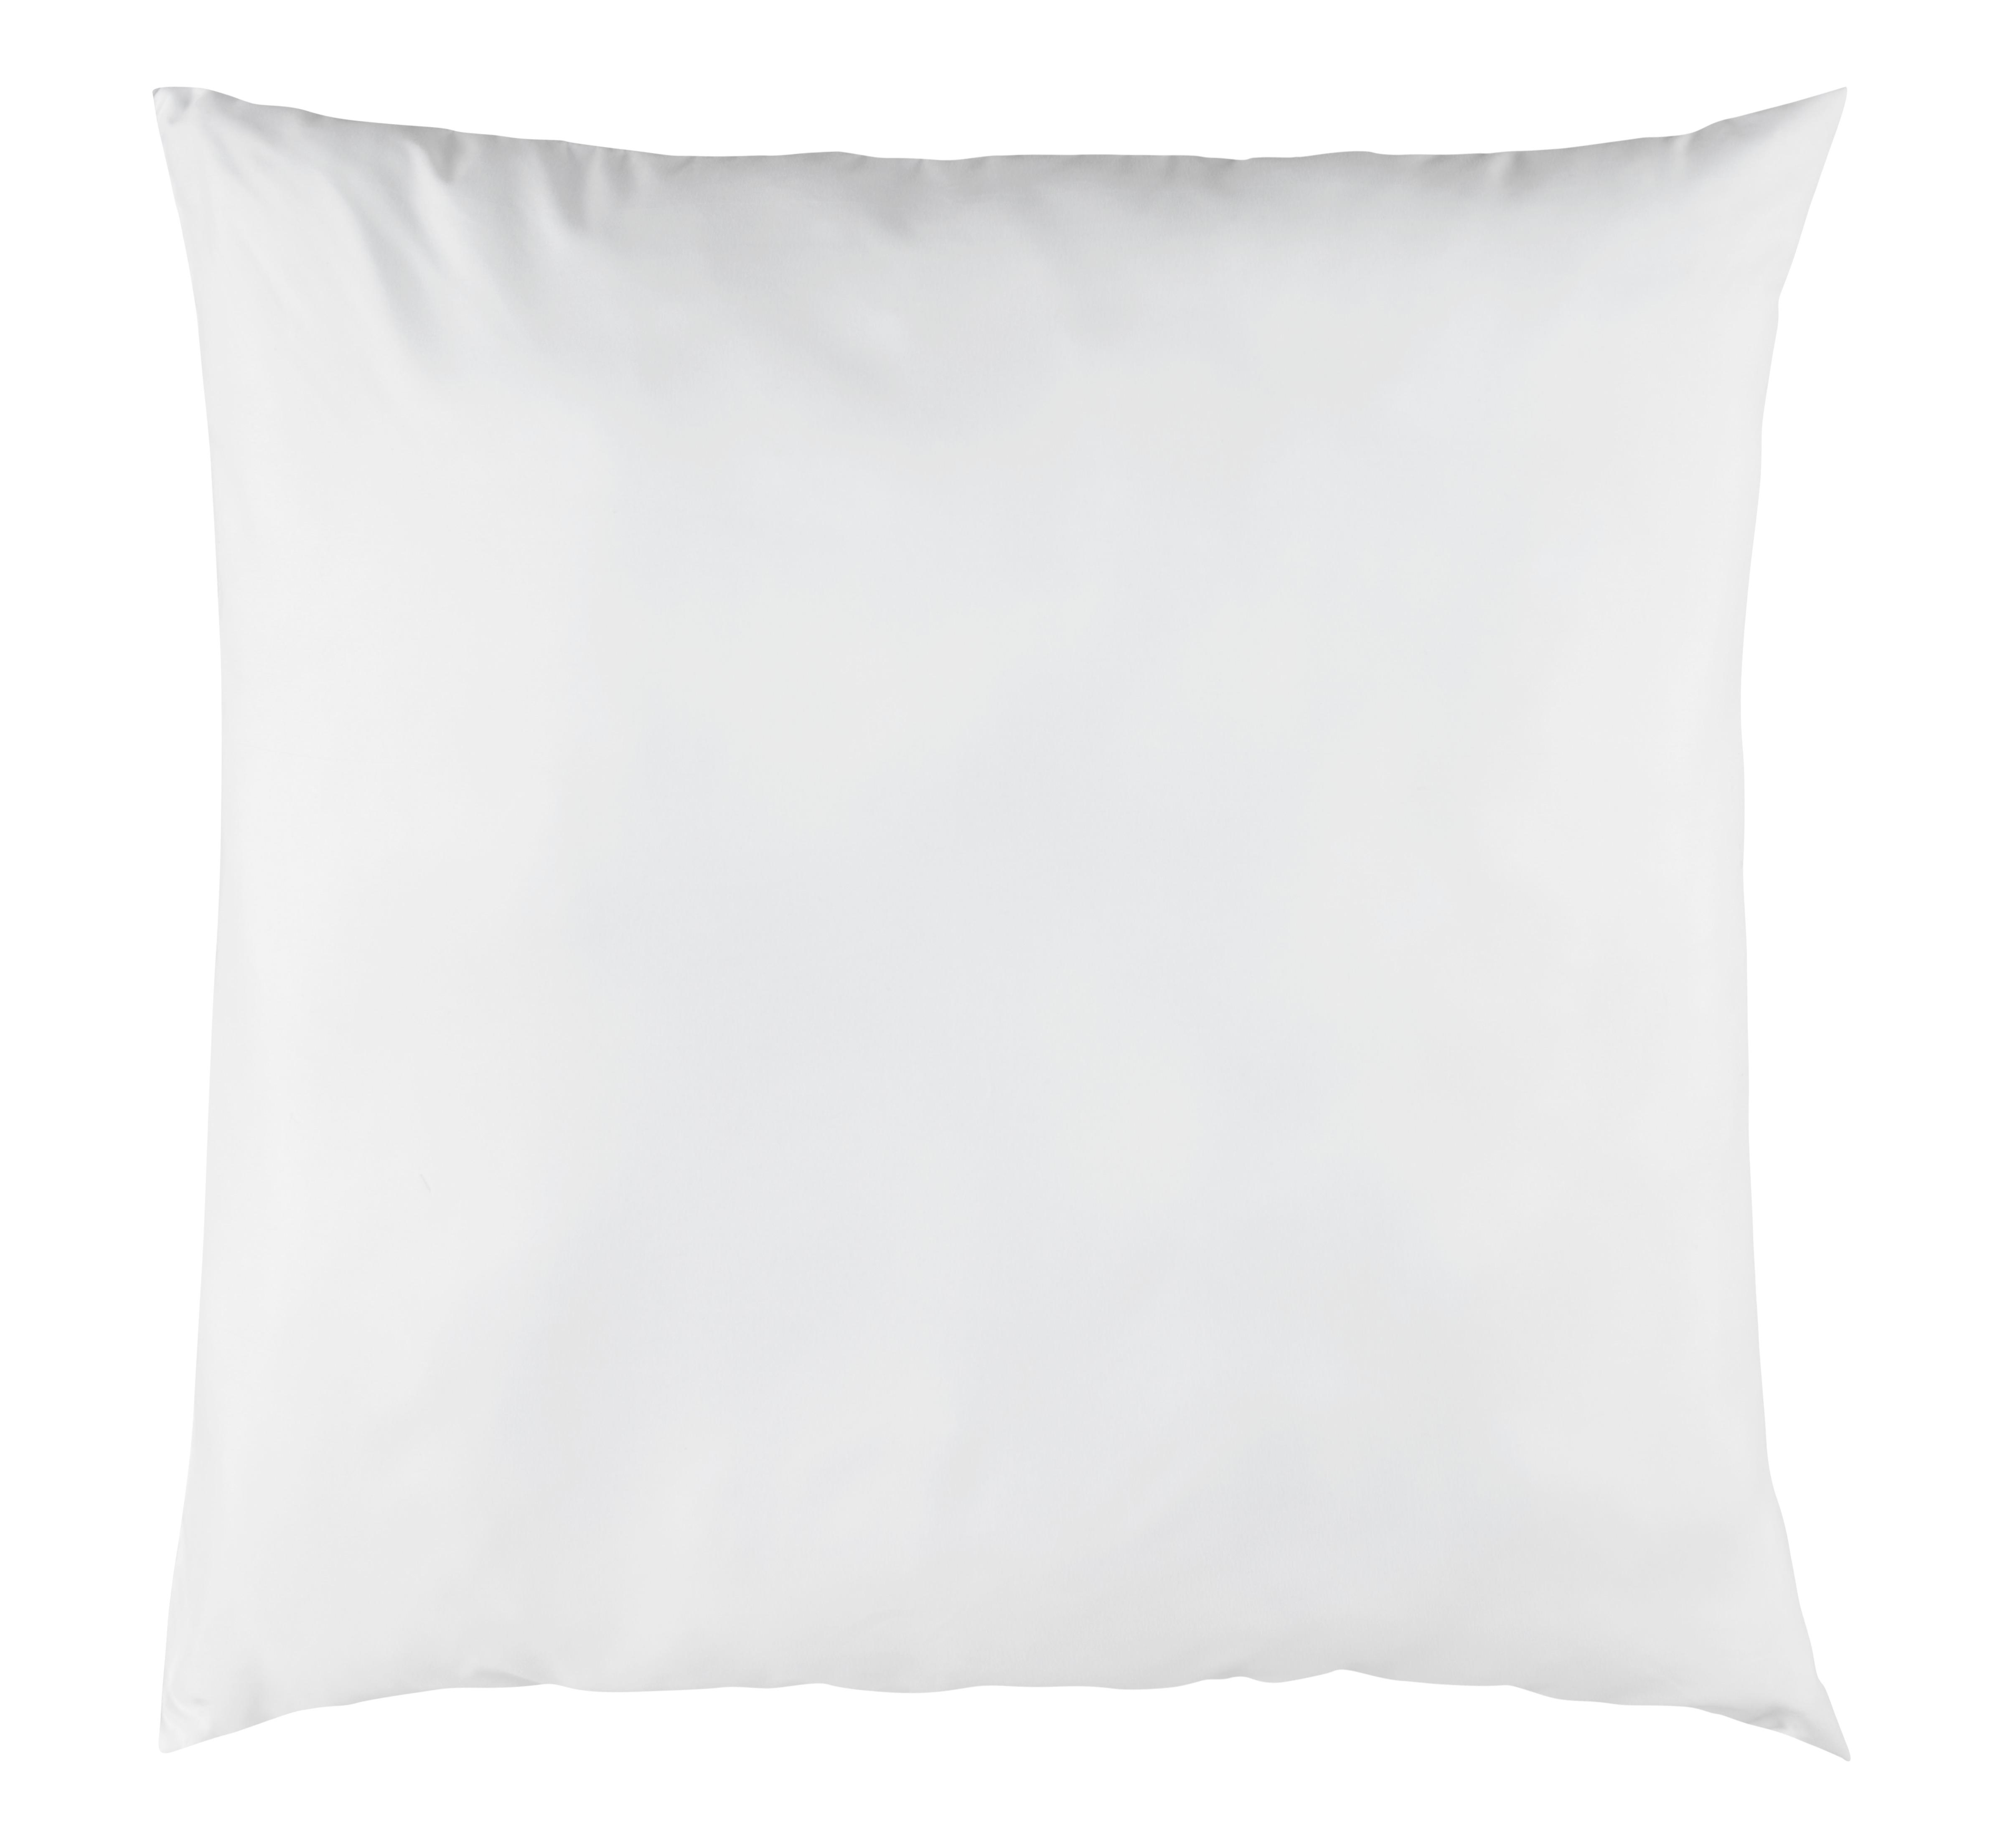 Kopfkissen Zilly in Weiß ca. 80x80cm - Weiß, Textil (80/80cm) - Nadana